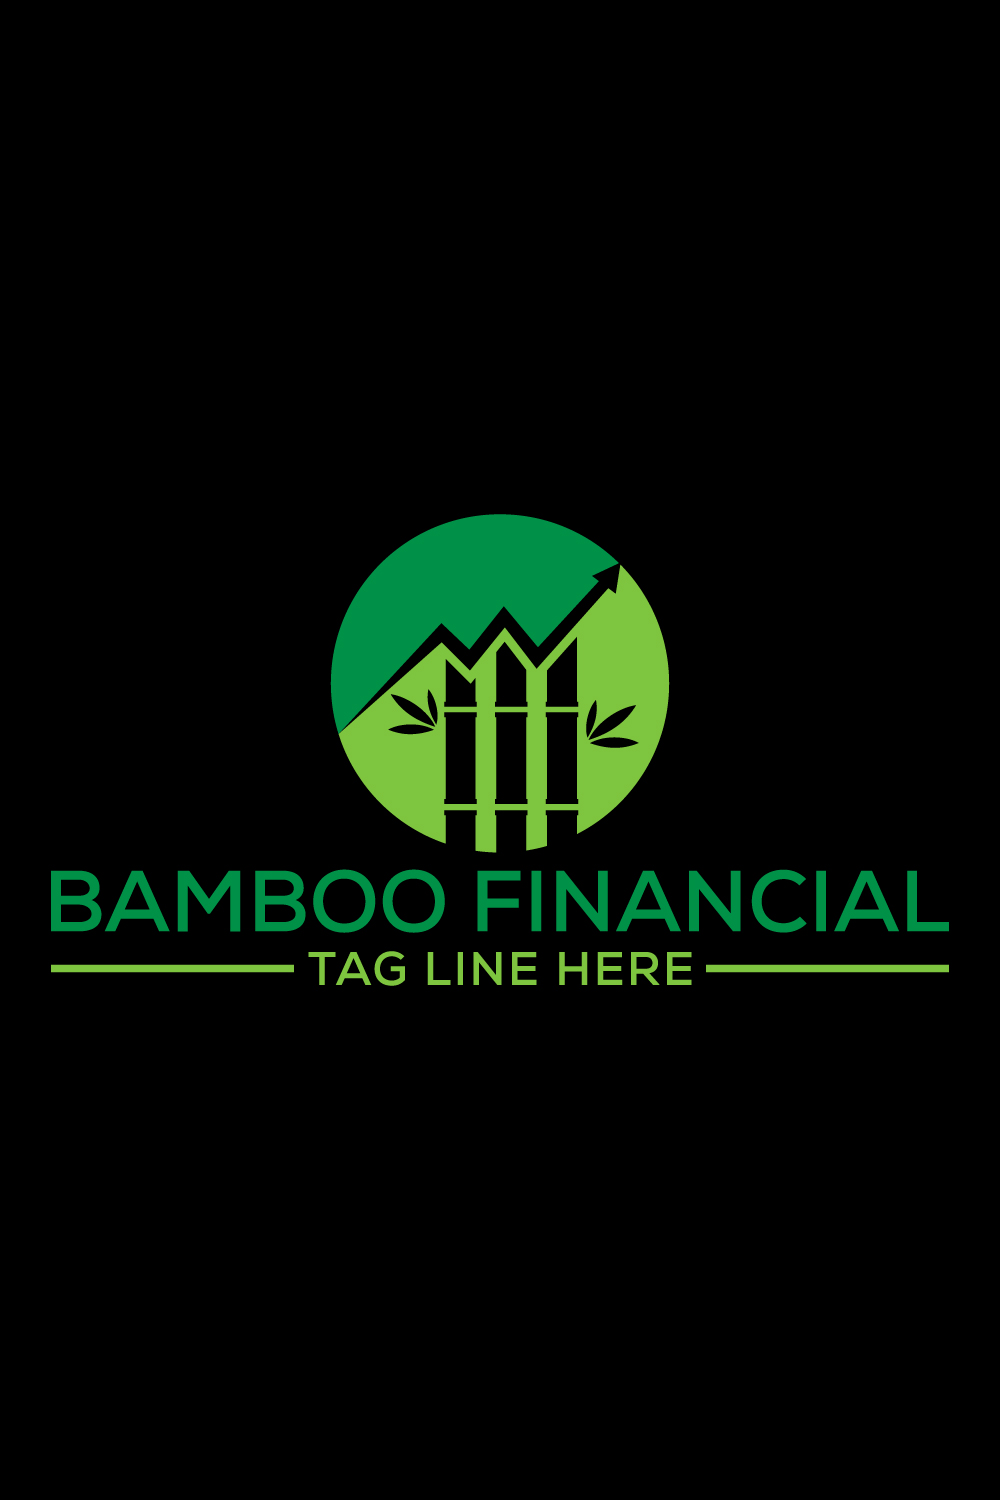 Bamboo Financial logo design, Vector design template pinterest preview image.